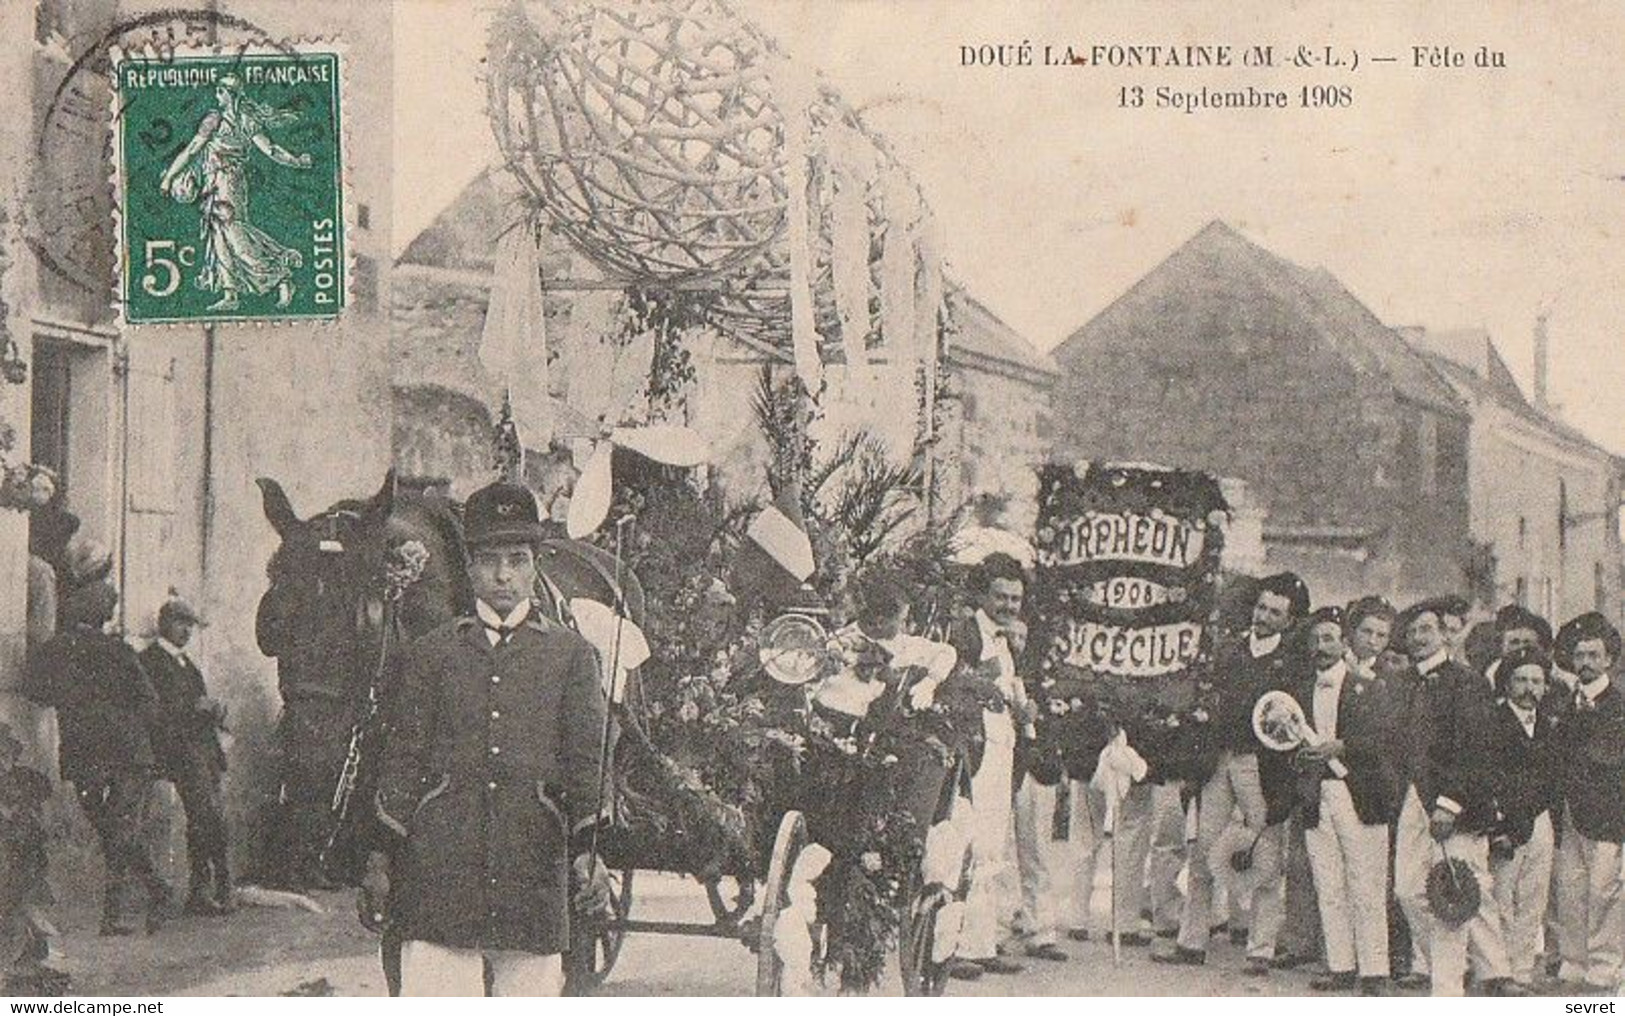 DOUE-la-FONTAINE. - Fête Du 13 Septembre 1908. Cliché RARE - Doue La Fontaine